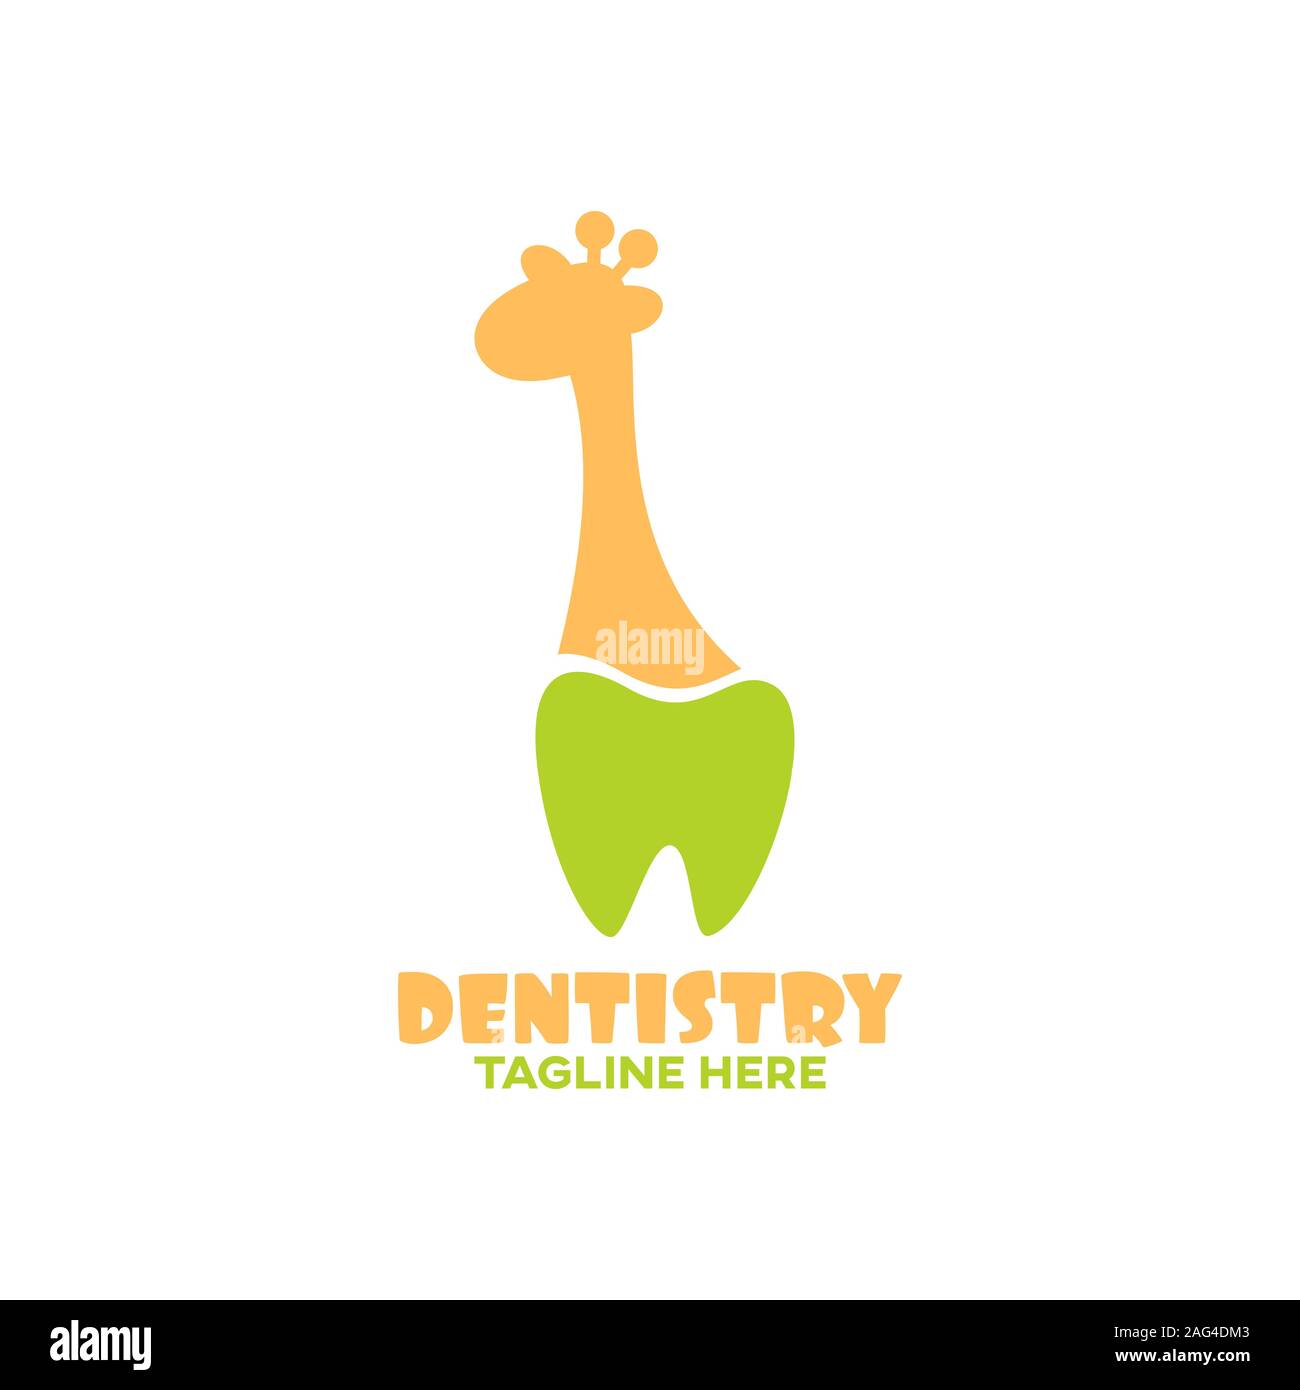 Modern children's dentistry and giraffe logo. Vector illustration. Stock Vector